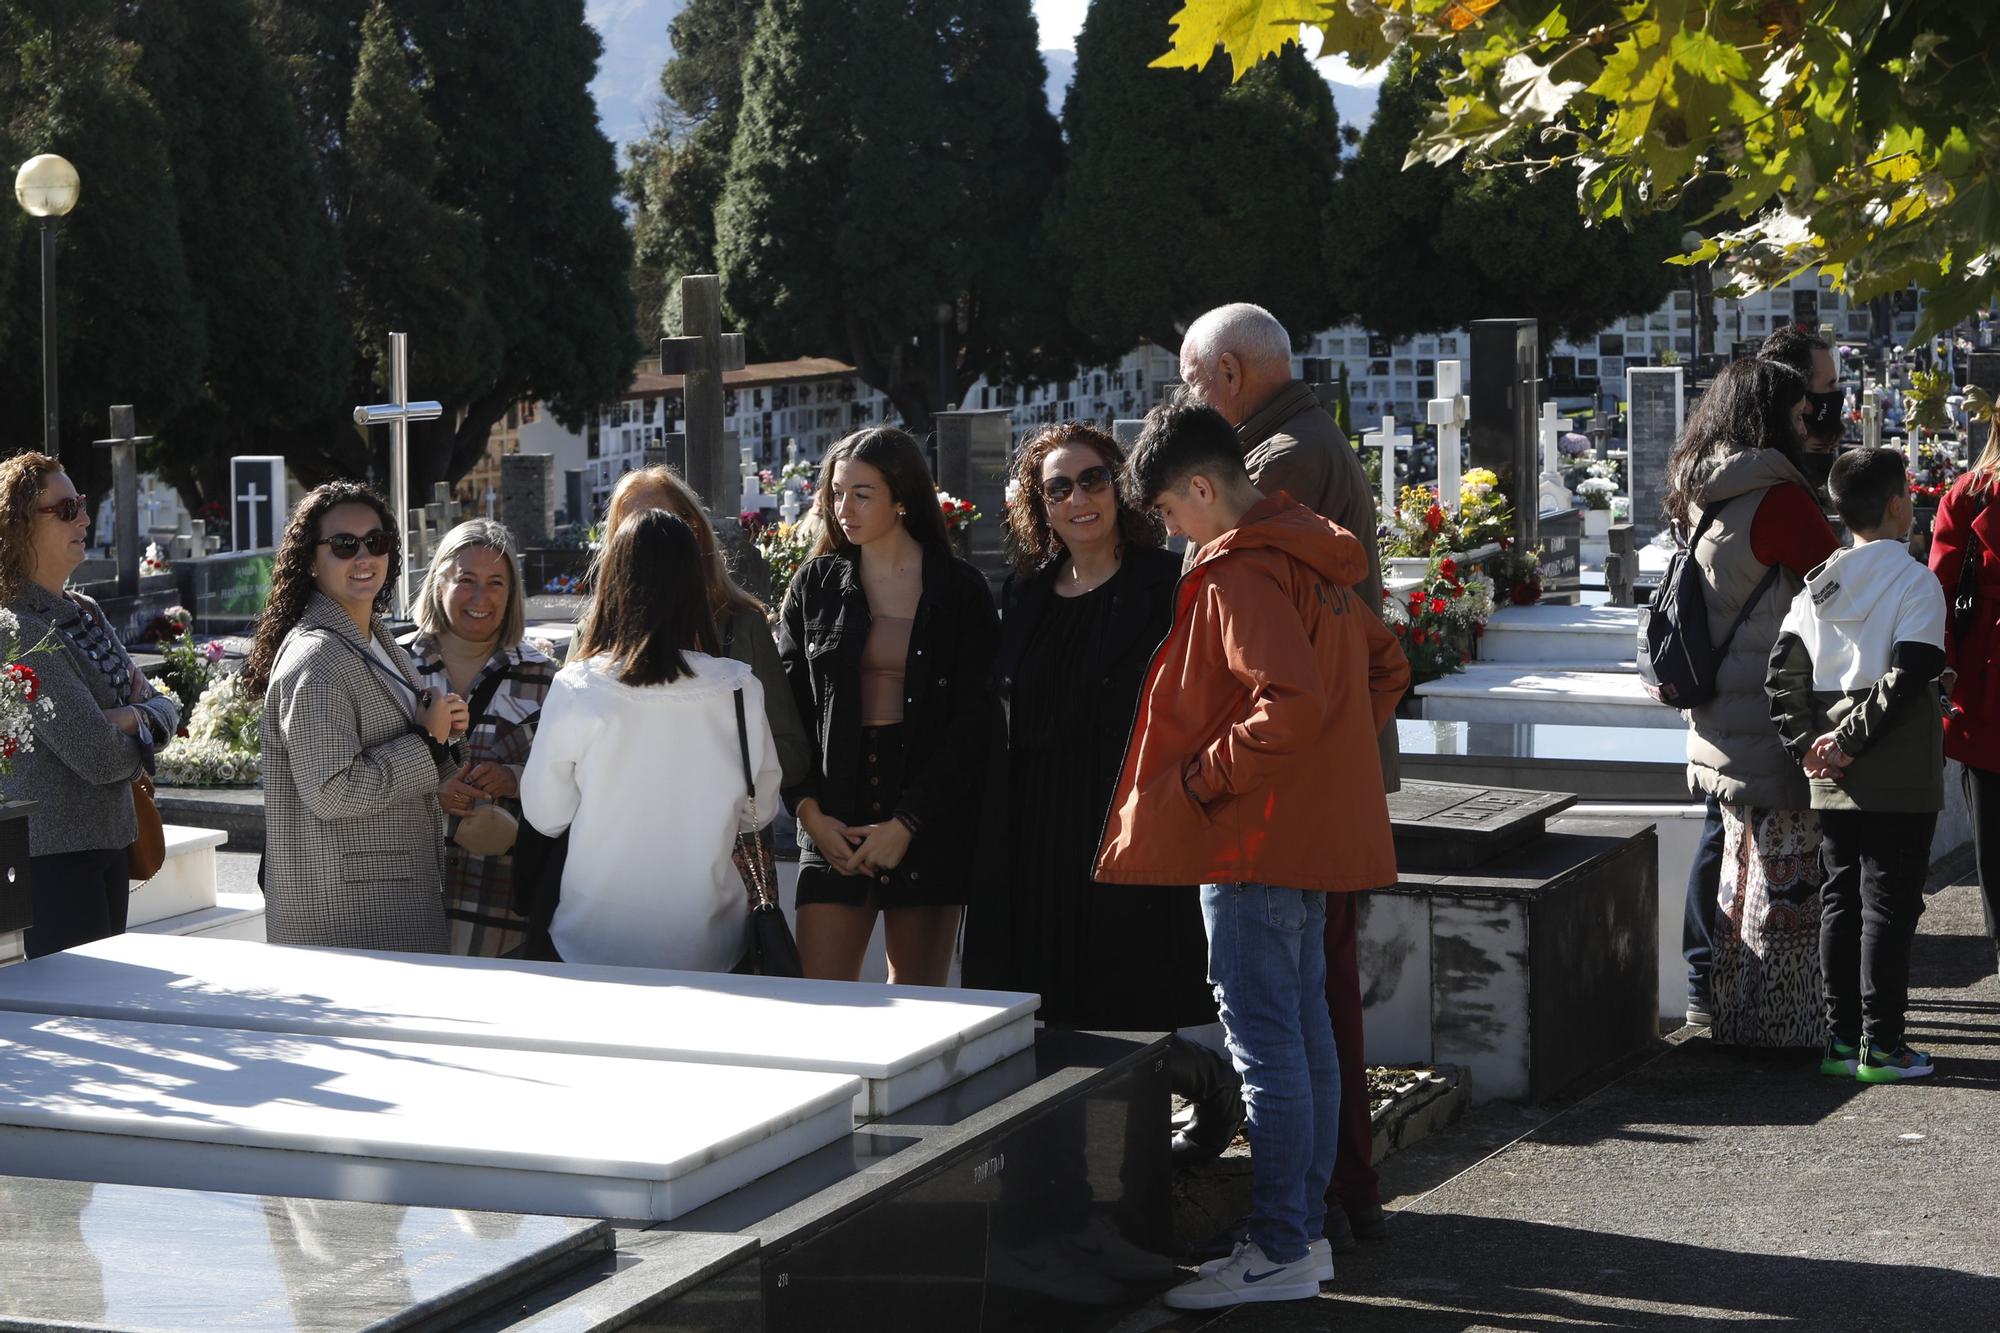 Así se ha celebrado el Día de los difuntos en los cementerios asturianos